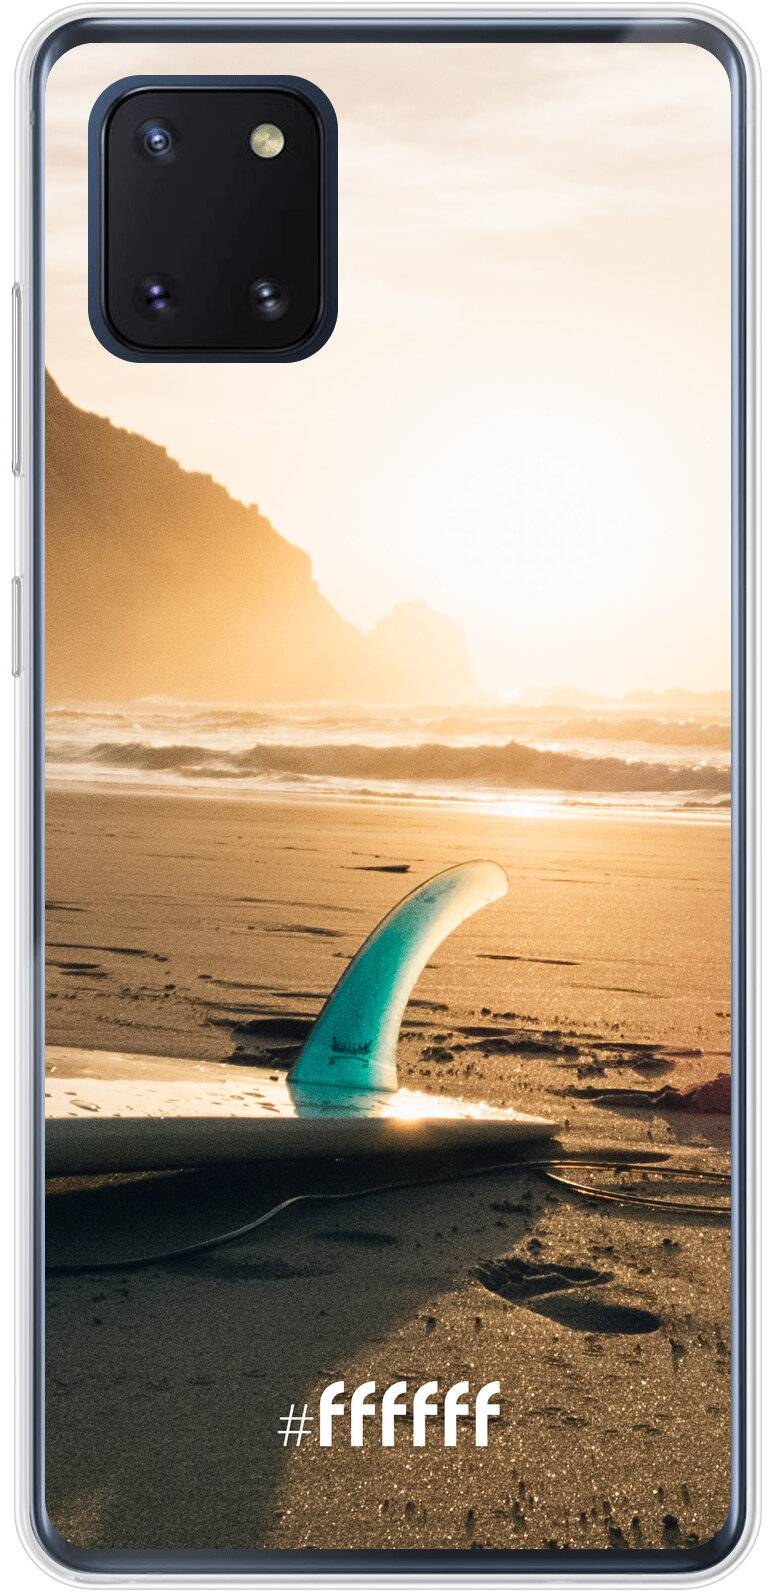 Sunset Surf Galaxy Note 10 Lite